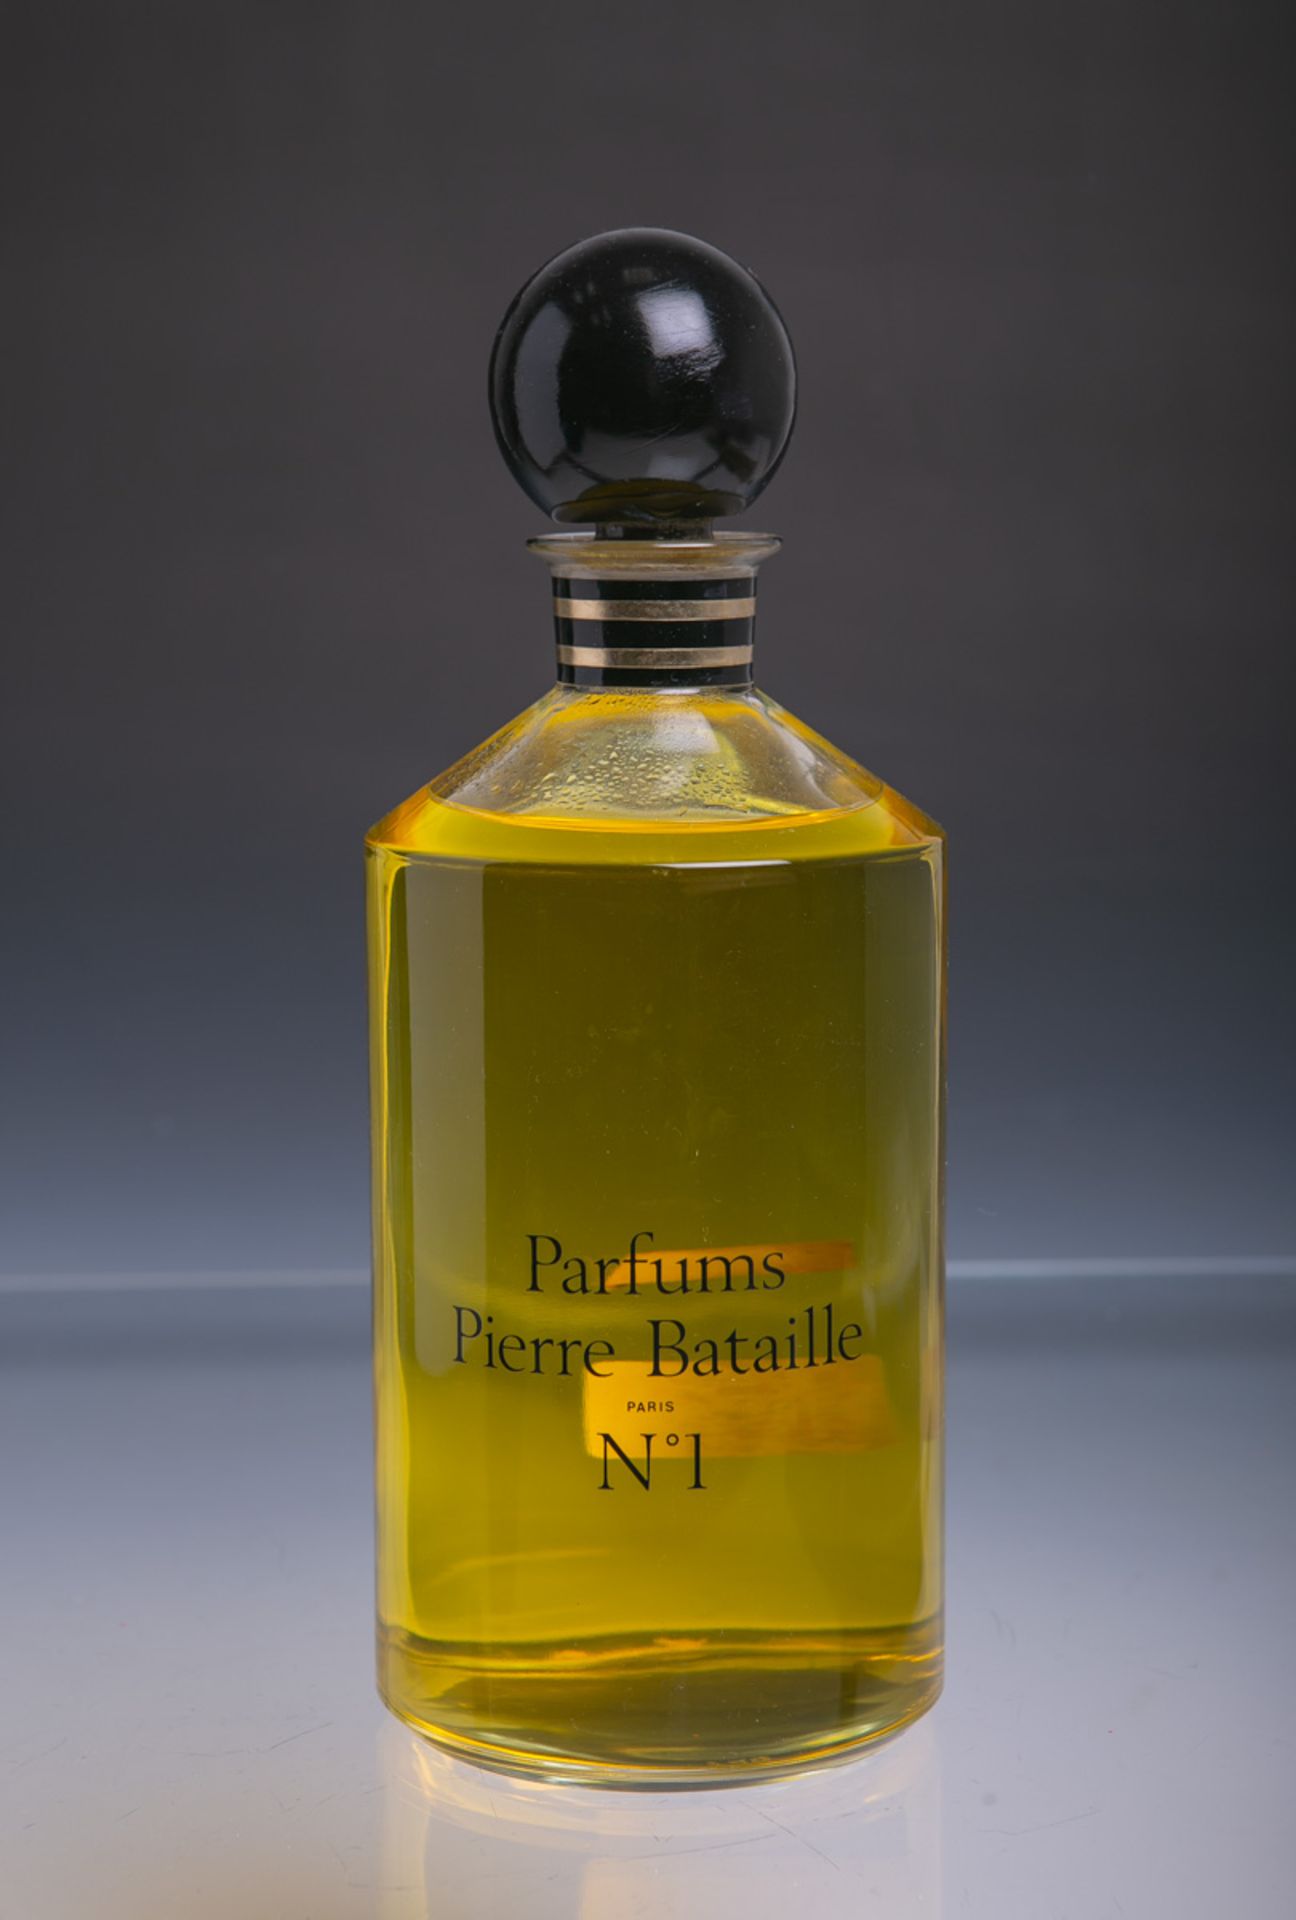 Gross-Factice "Parfums Pierre Bataille Nr. 1" (Paris) - Image 2 of 2